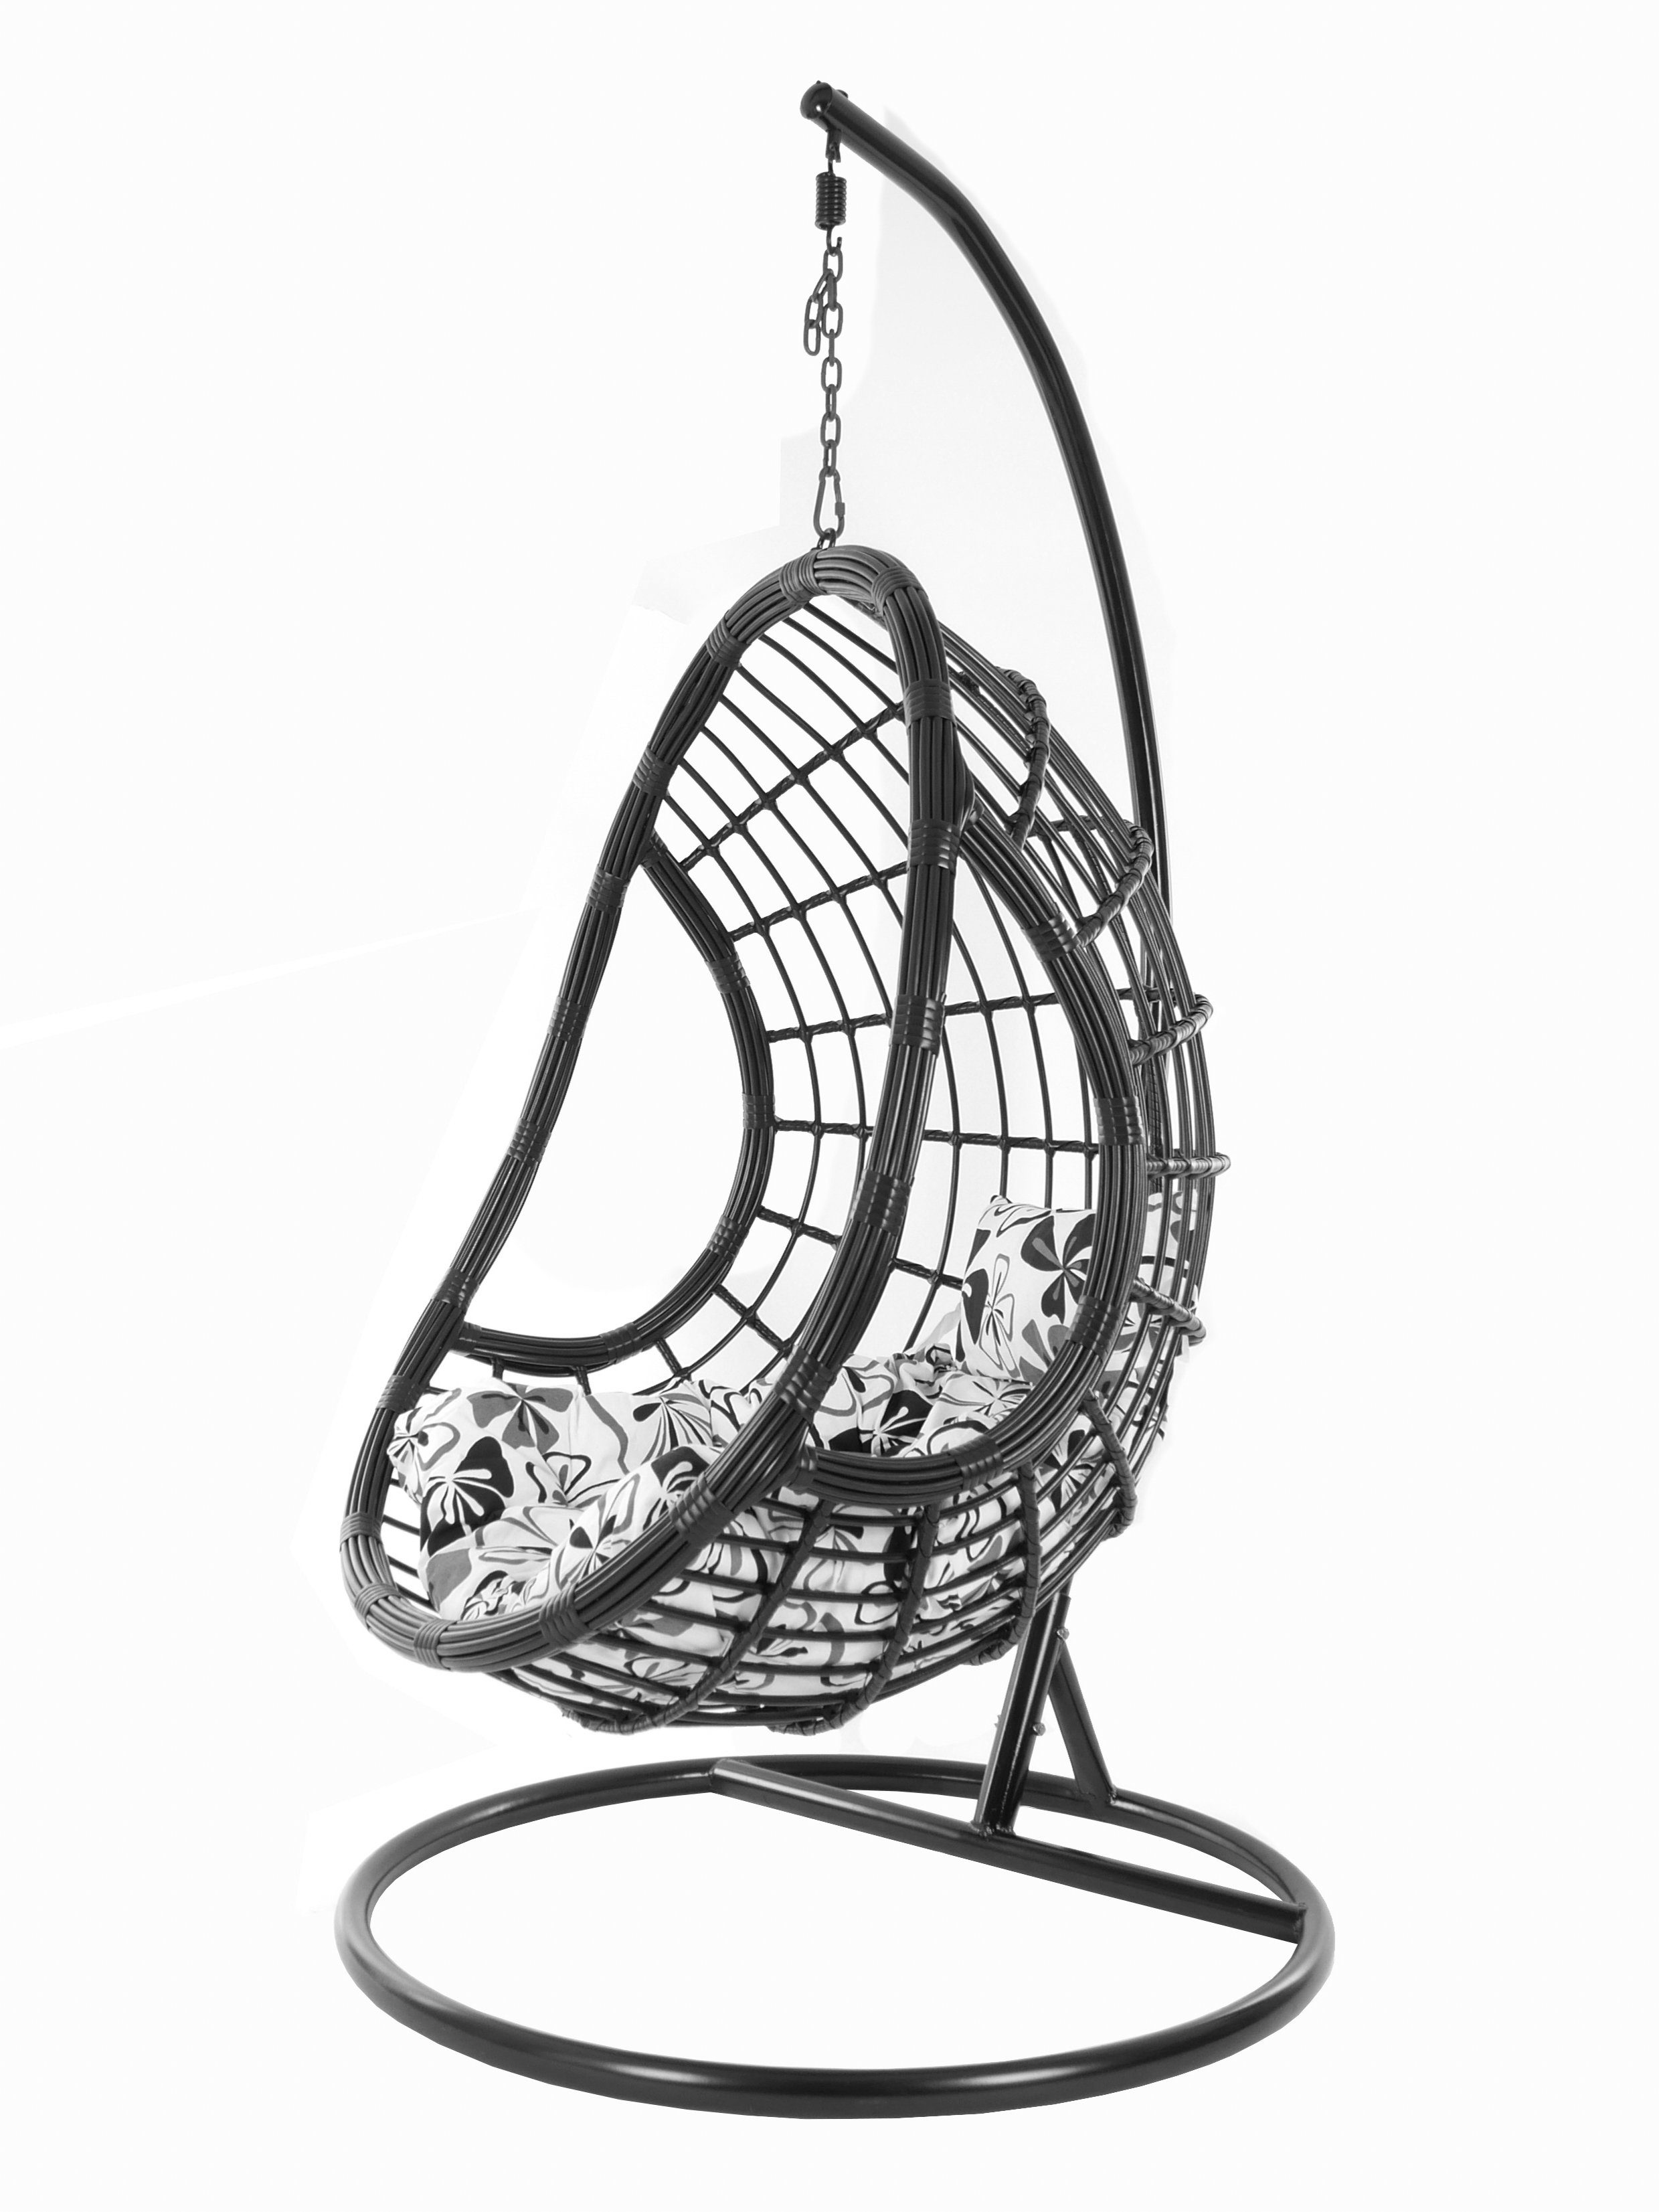 KIDEO Hängesessel PALMANOVA black, Swing Chair, schwarz, Loungemöbel, Hängesessel mit Gestell und Kissen, Schwebesessel, edles Design blumenmuster grau (9800 fossil flower love)